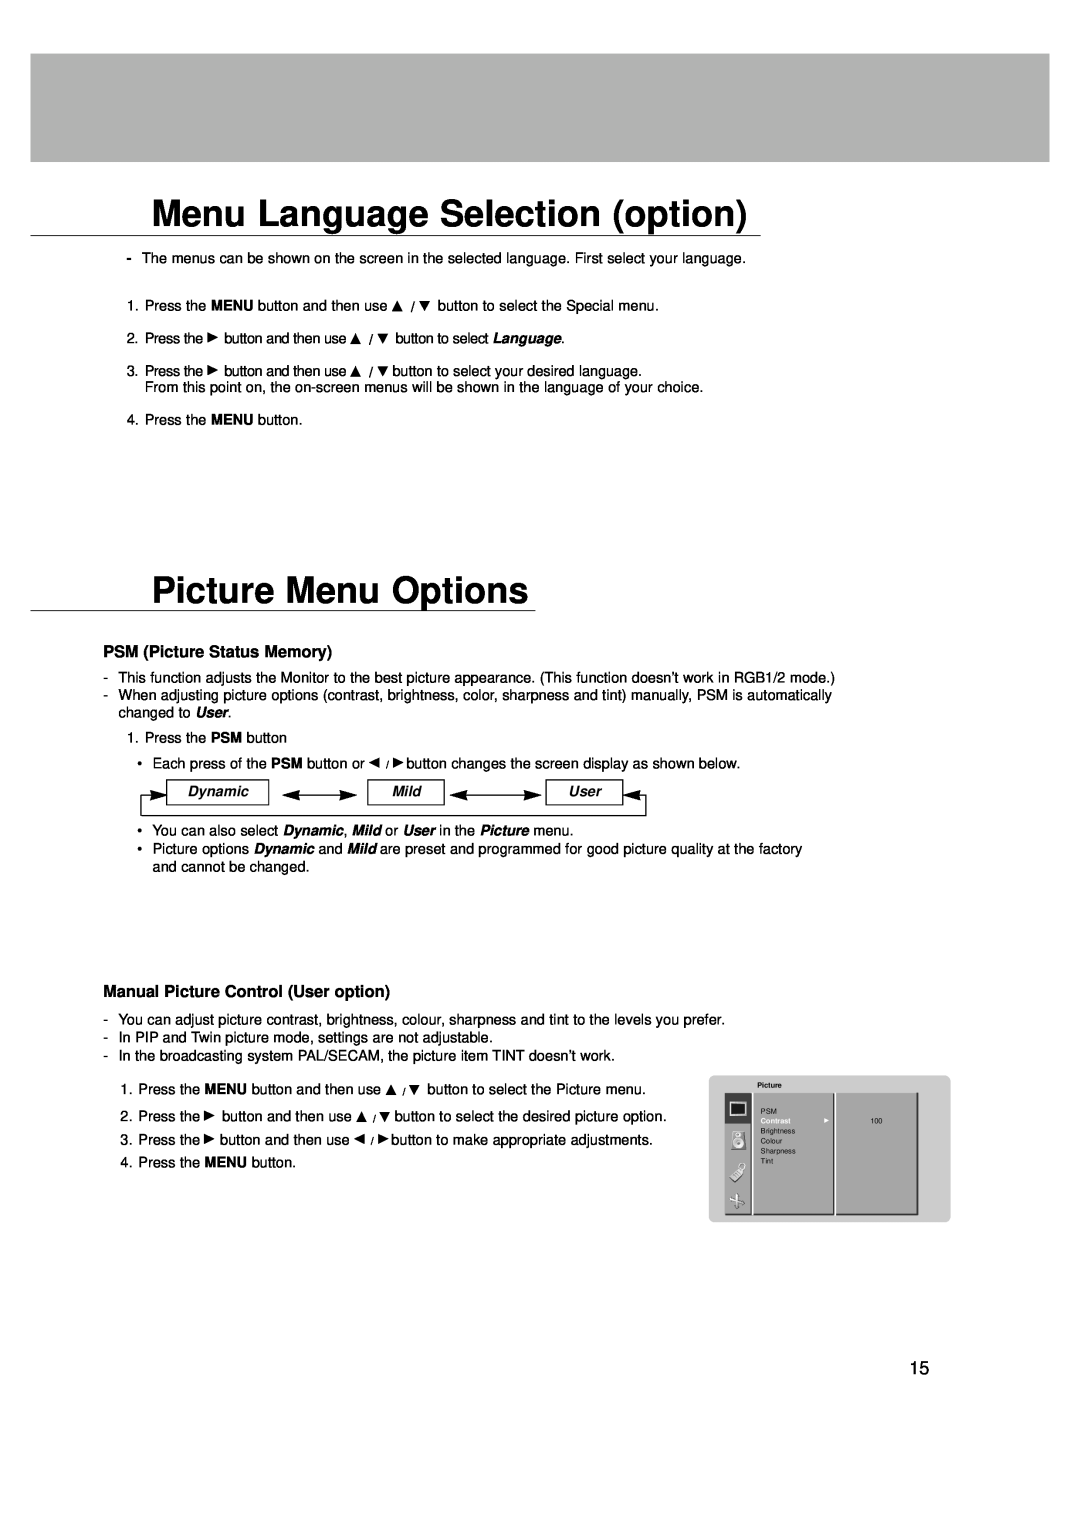 LG Electronics MT-42PZ41M Menu Language Selection option, Picture Menu Options, PSM Picture Status Memory, Dynamic, Mild 